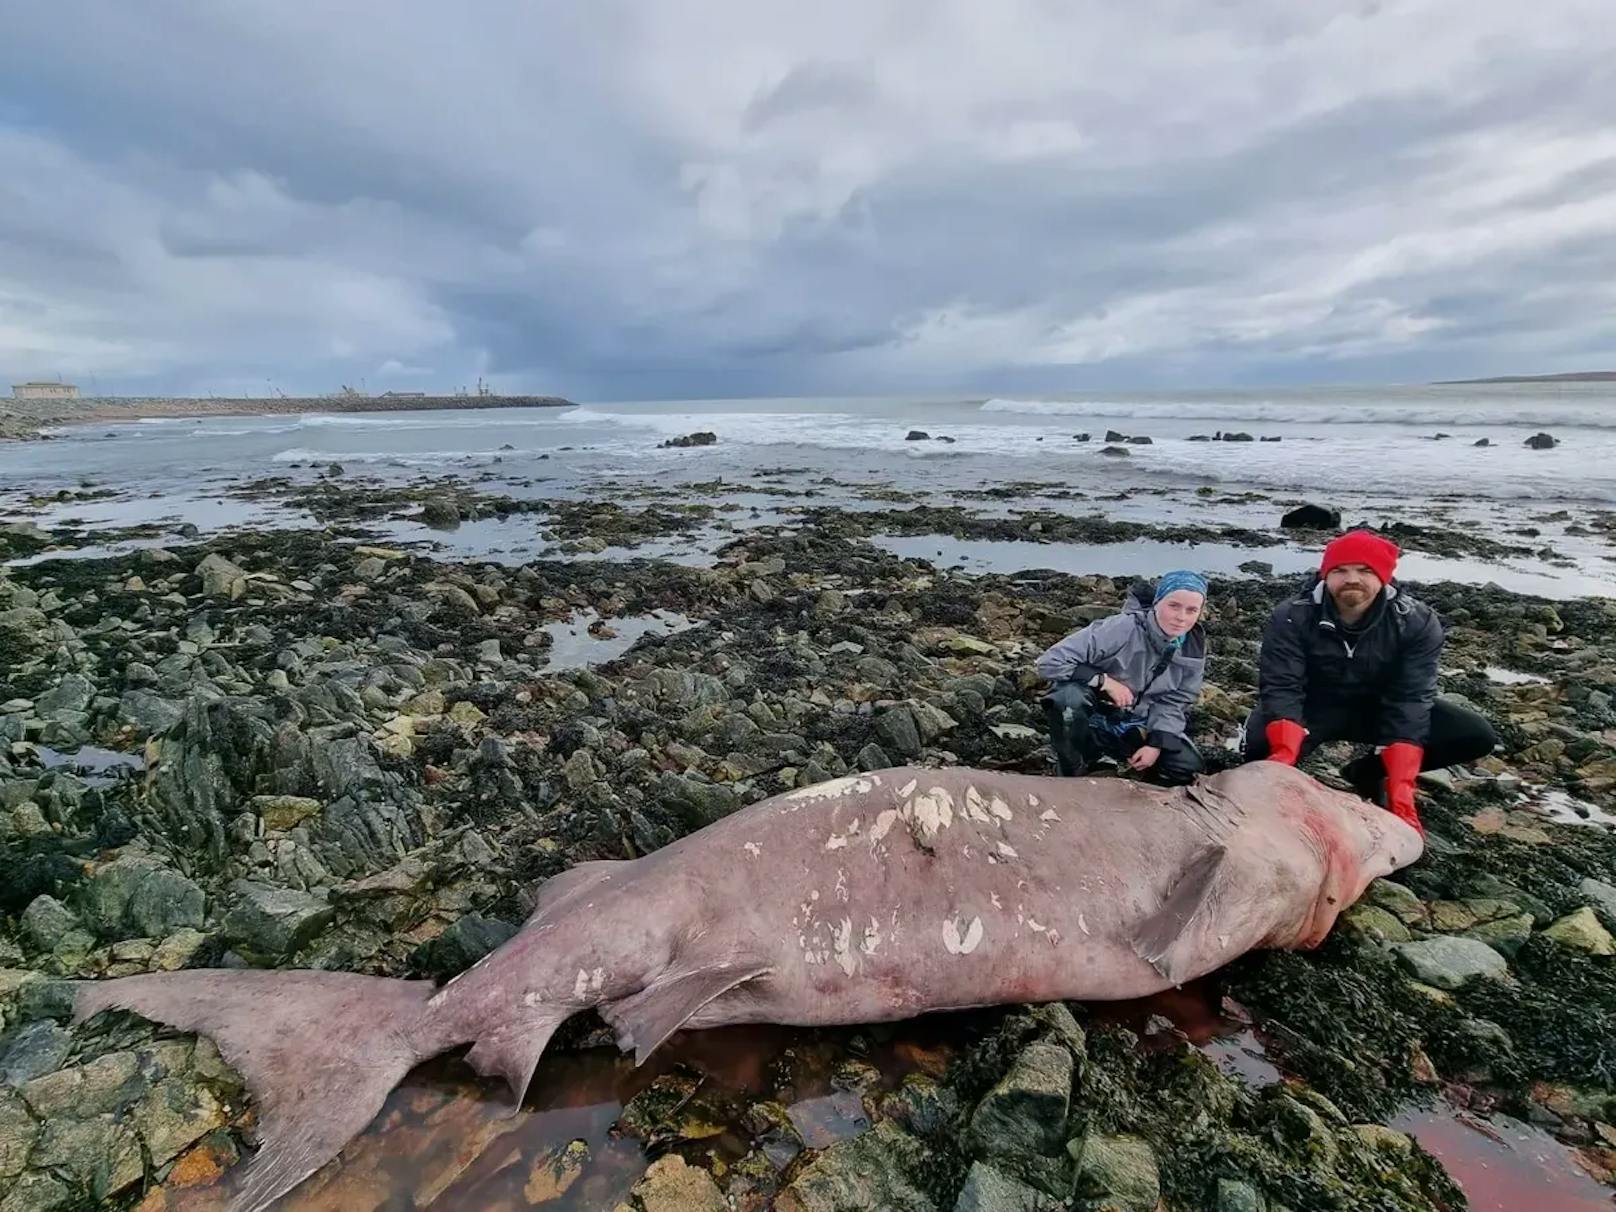 An der Küste der irischen Grafschaft Wexford wurde ein seltener Hai angespült. Von einem Schweizer Touristen gefunden, reisten mehrere Biologen (im Bild) schnellstmöglich an, um das Tier zu suchen.